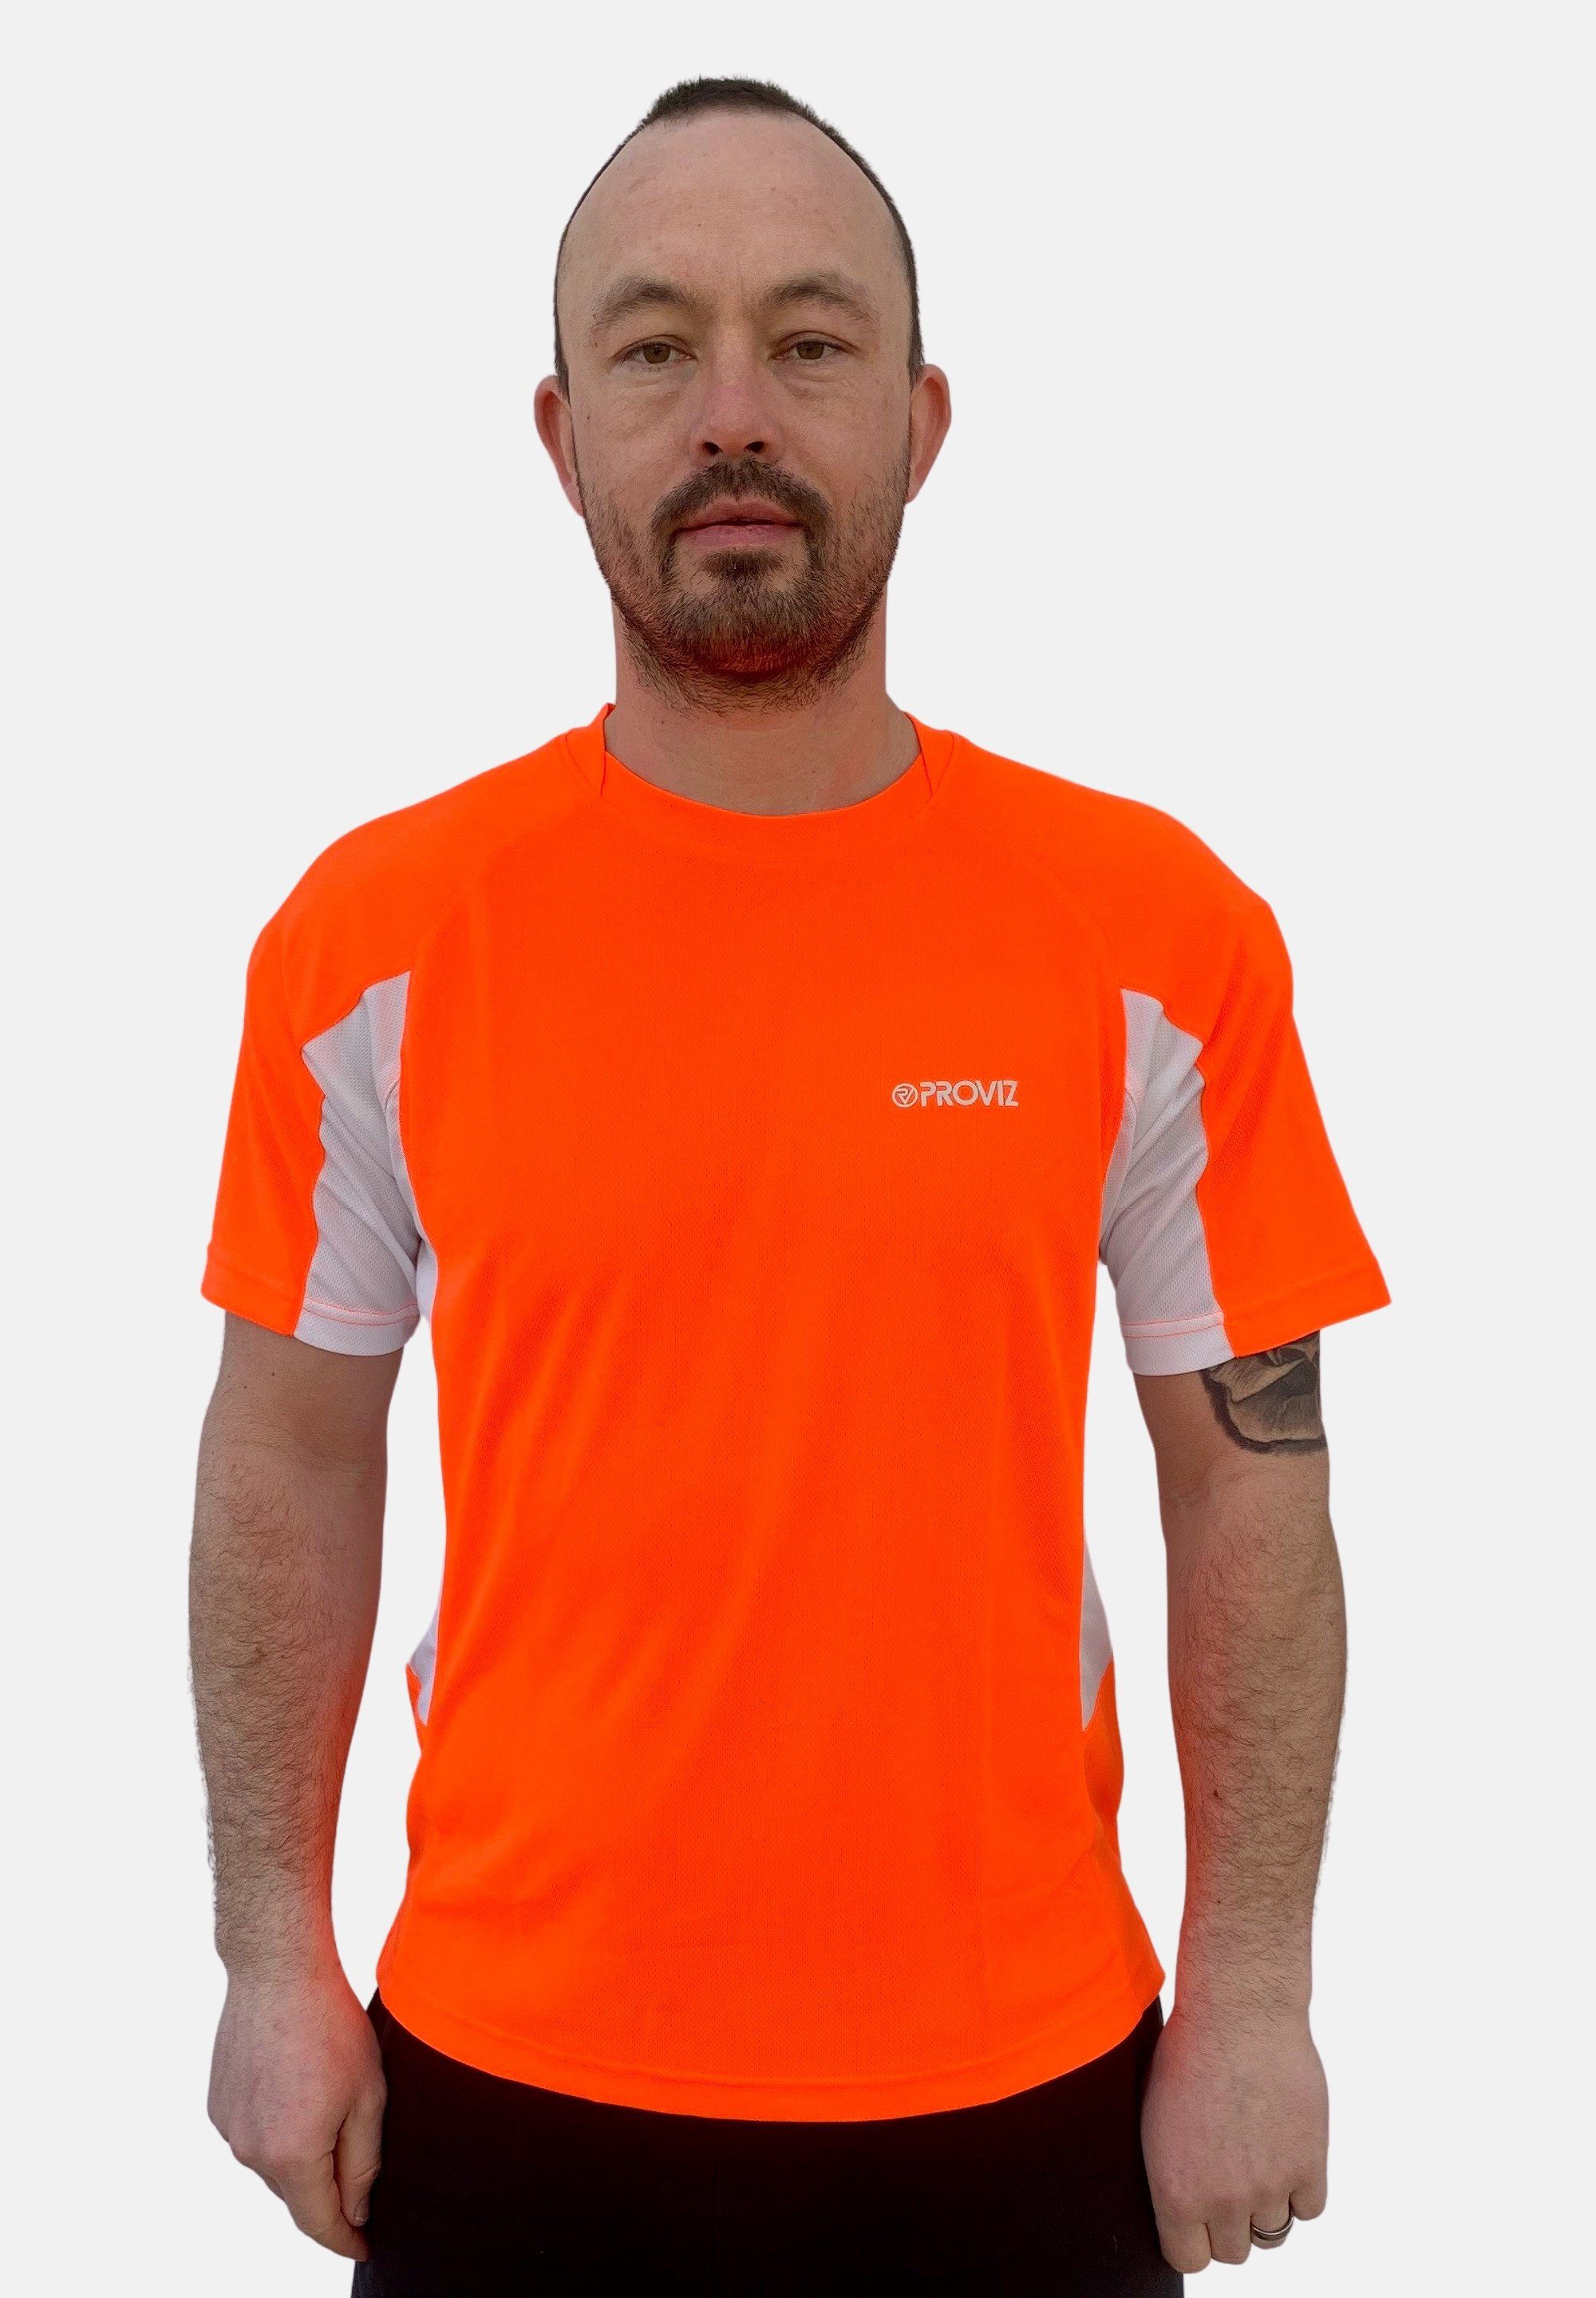 Ultraleicht, orange Klassisch Laufshirt reflektierend feuchtigkeitsabsorbierend, ProViz